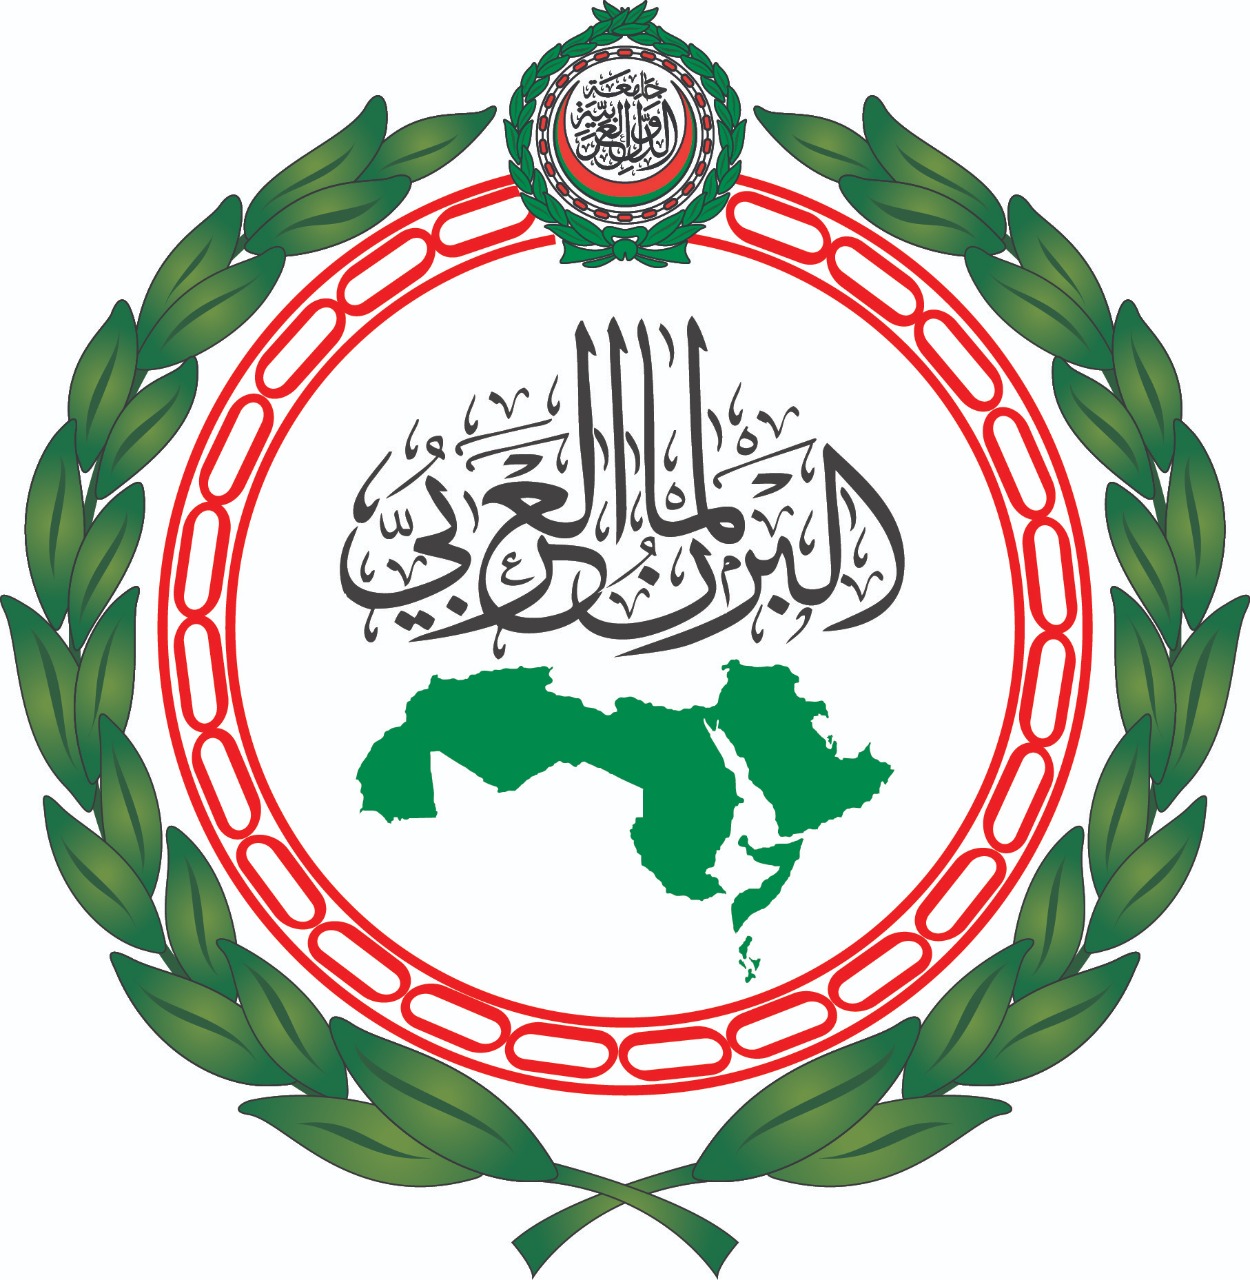 البرلمان العربي يدعو لعقد اجتماع هام للجنة فلسطين بالبرلمان العربي الخميس المقبل